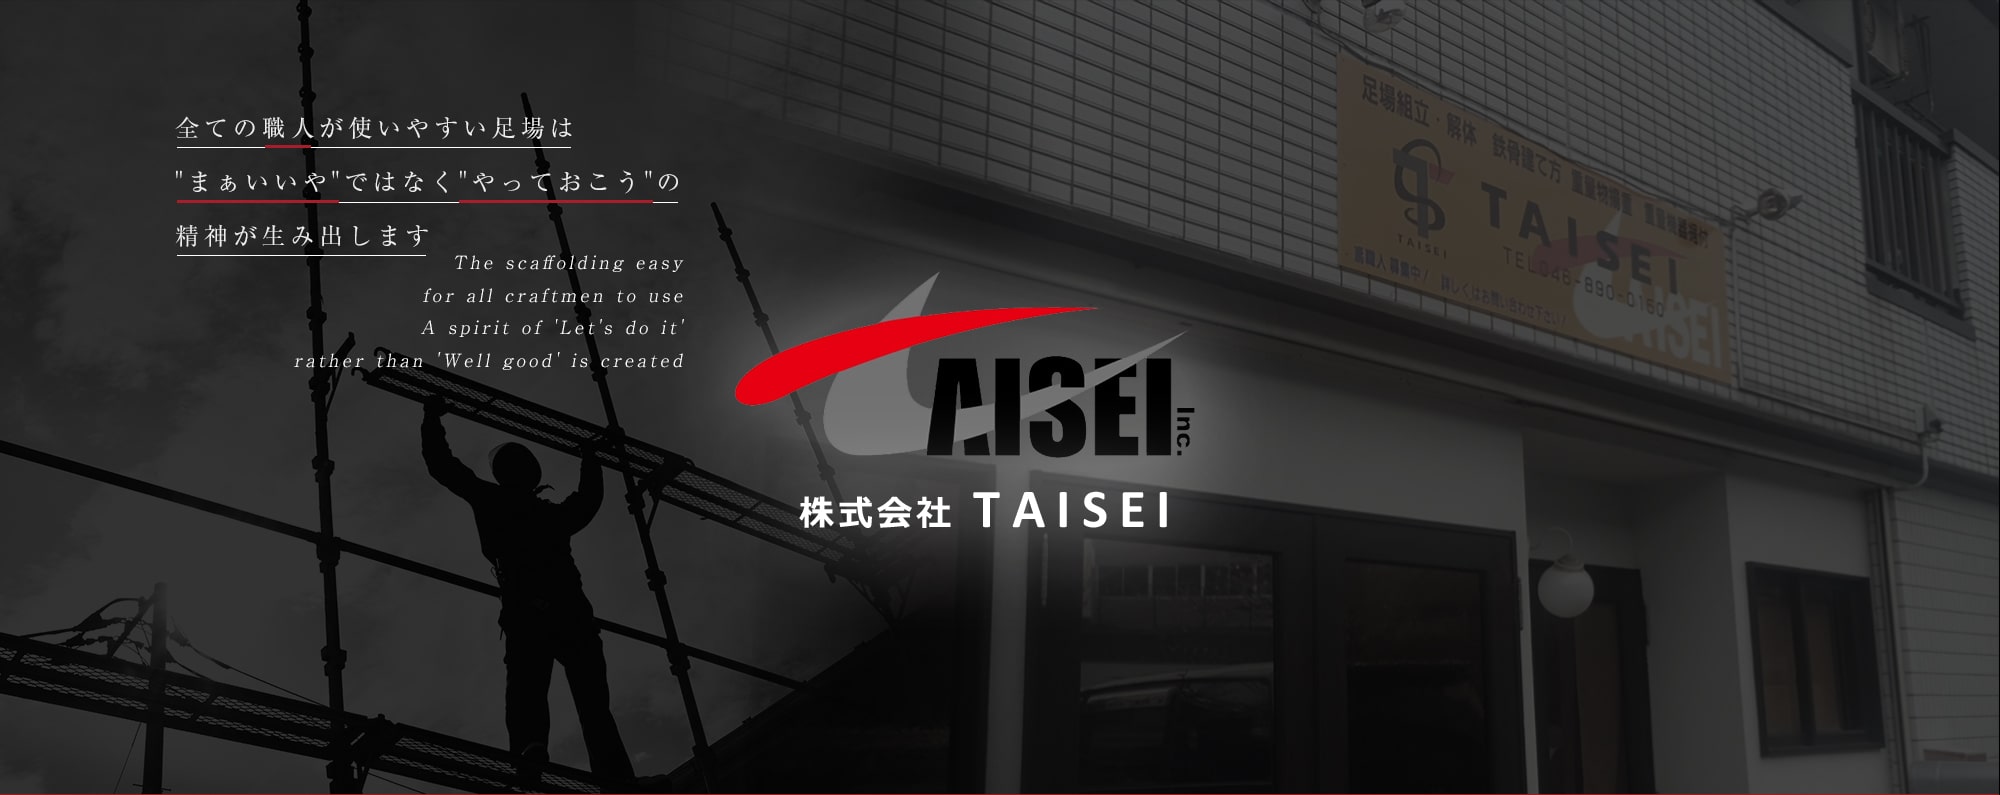 株式会社TAISEI